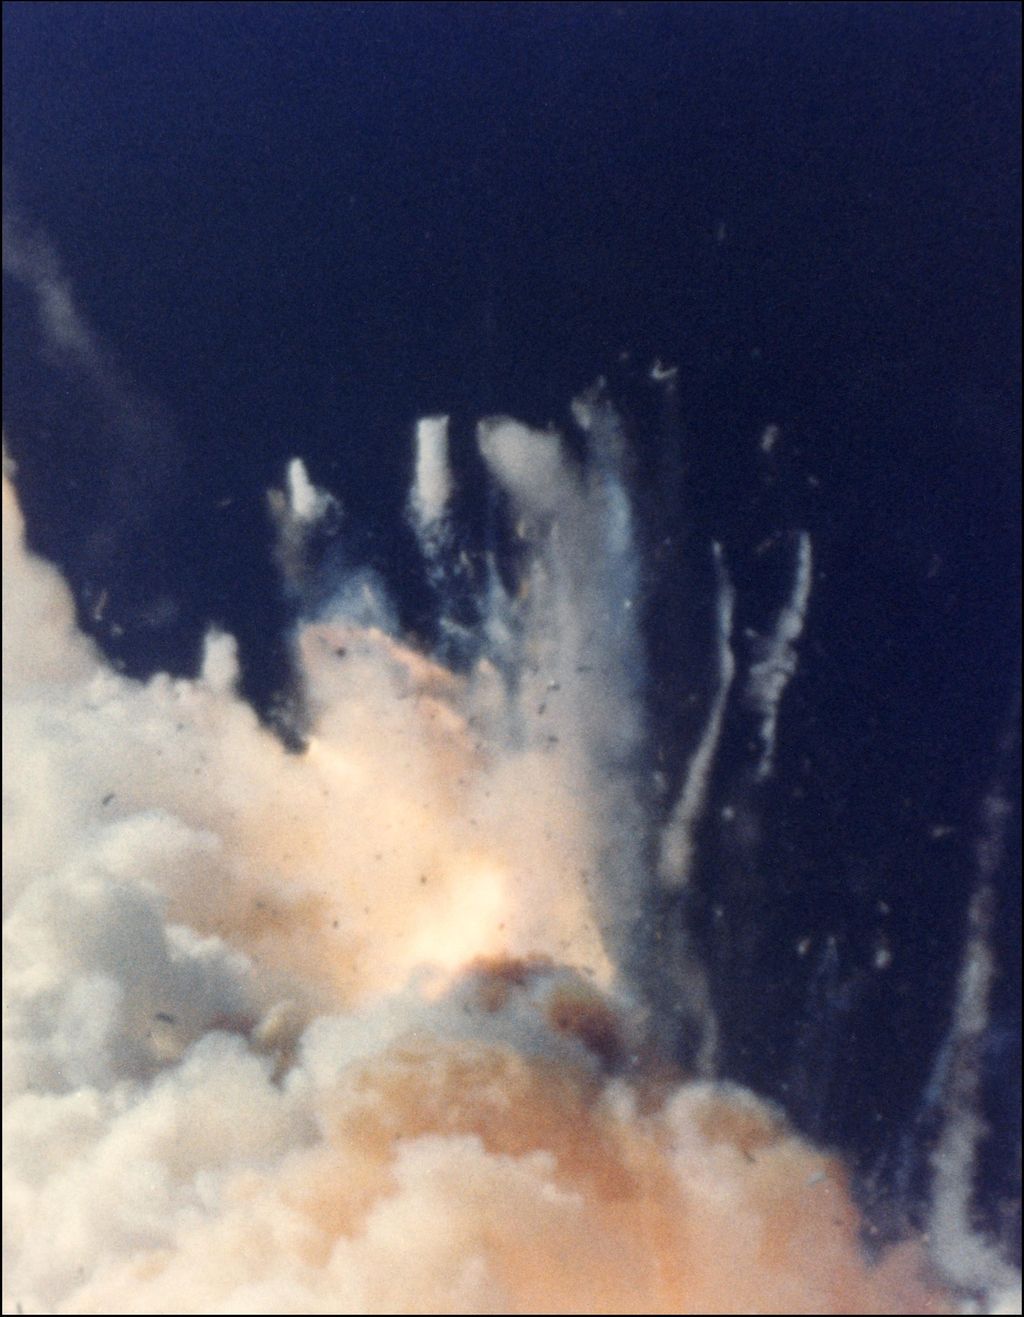 &nbsp; 28 gennaio 1986 esplode lo Shuttle Challenger&nbsp;